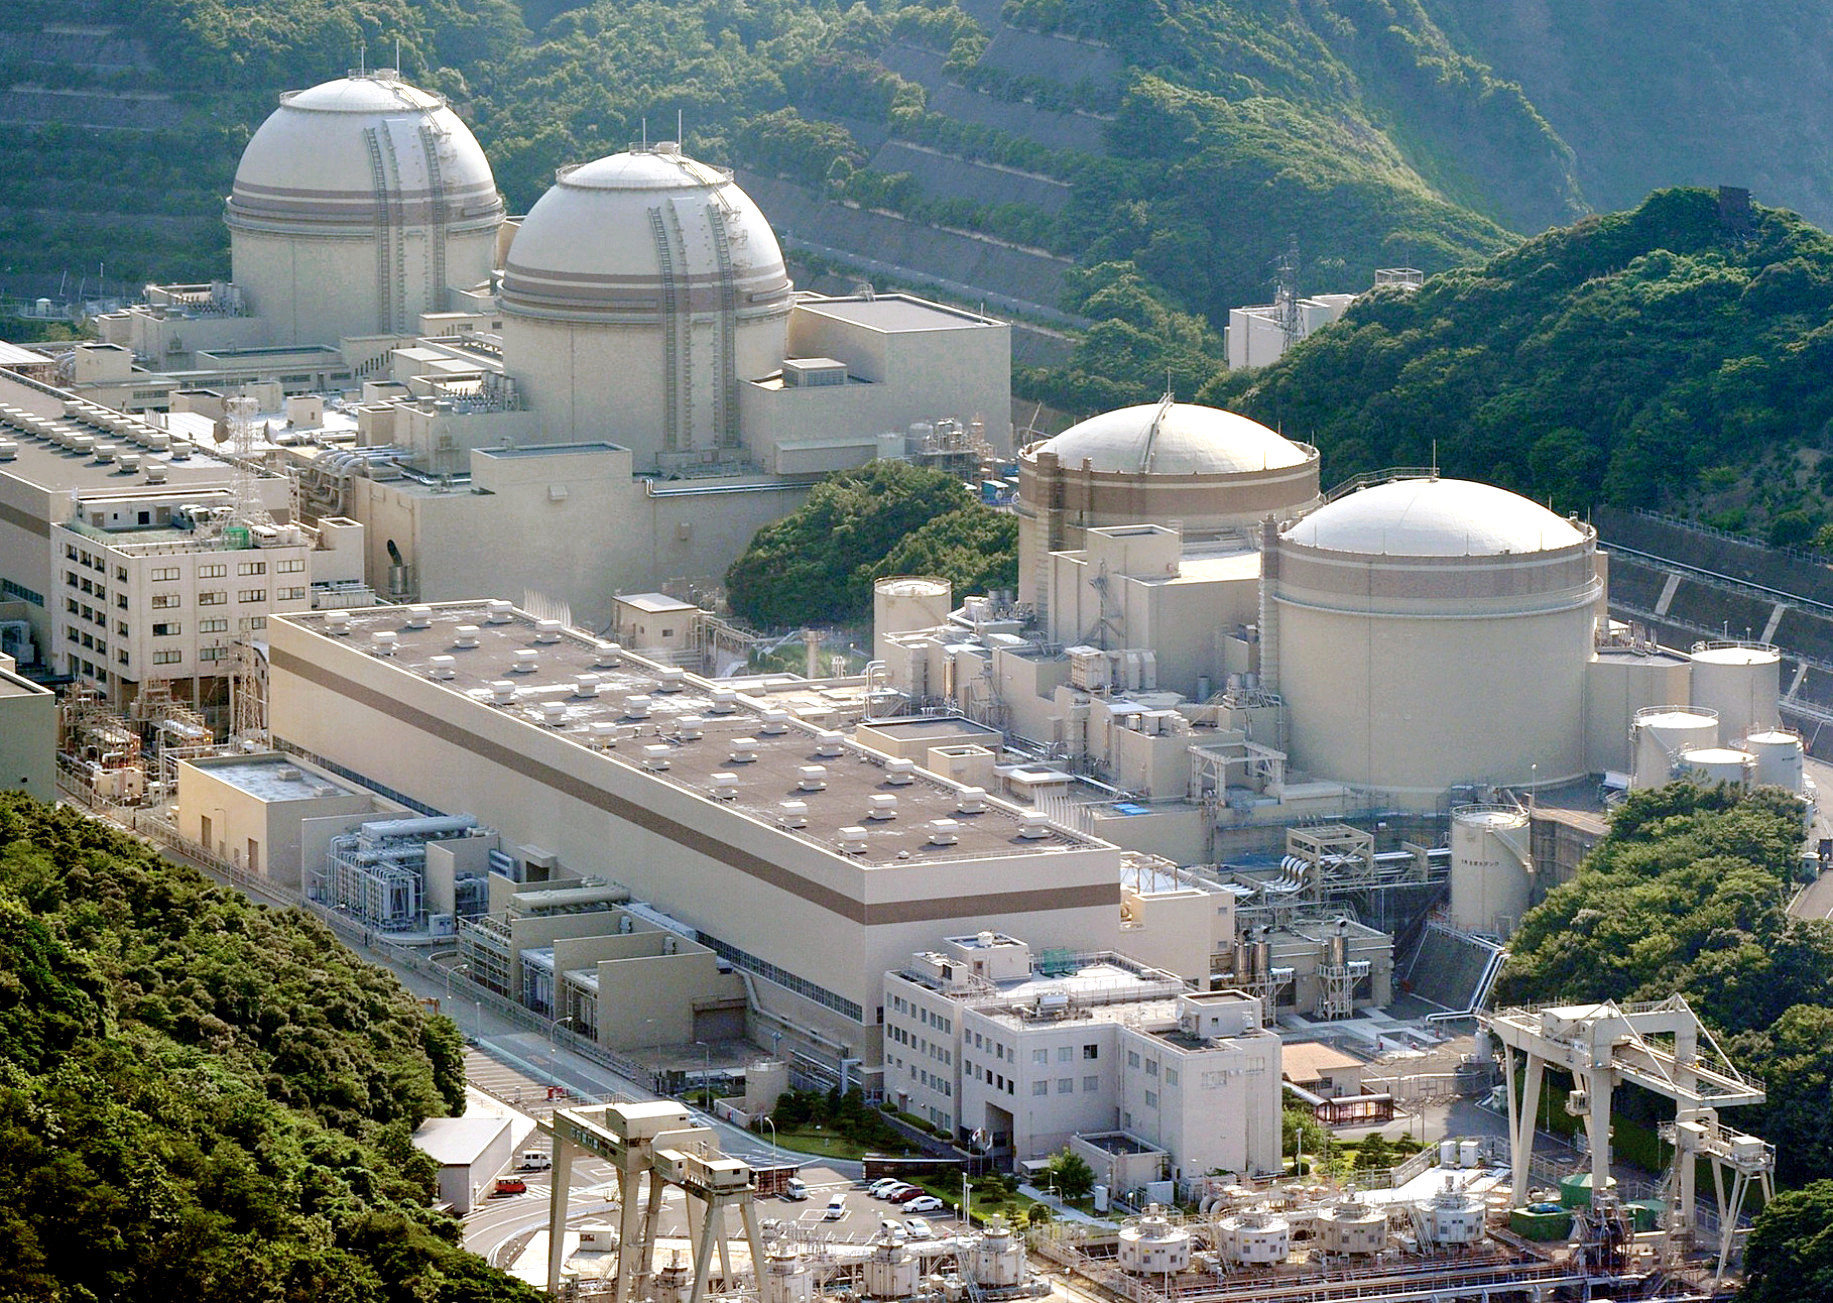 Nhà máy điện hạt nhân Oi: Nhà máy điện hạt nhân Oi, Nhật Bản, với tổng công suất 4710MW từ hai lò phản ứng công suất 1175MW và hai lò phản ứng công suất 1180MW.